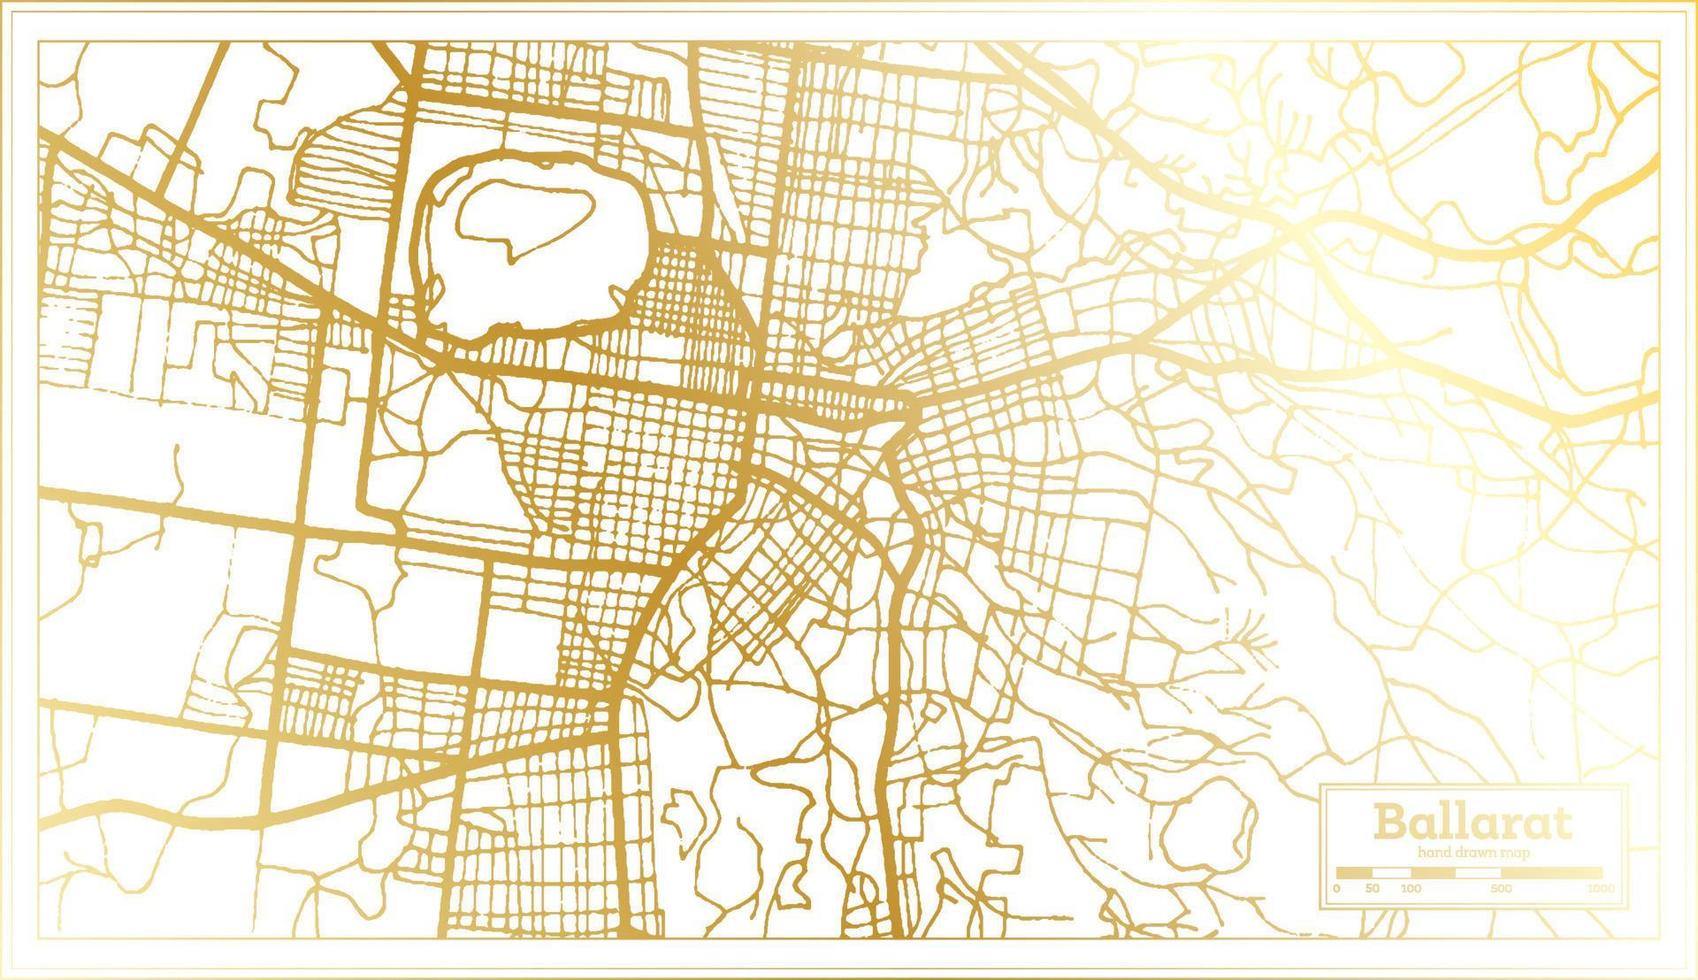 ballarat Australië stad kaart in retro stijl in gouden kleur. schets kaart. vector